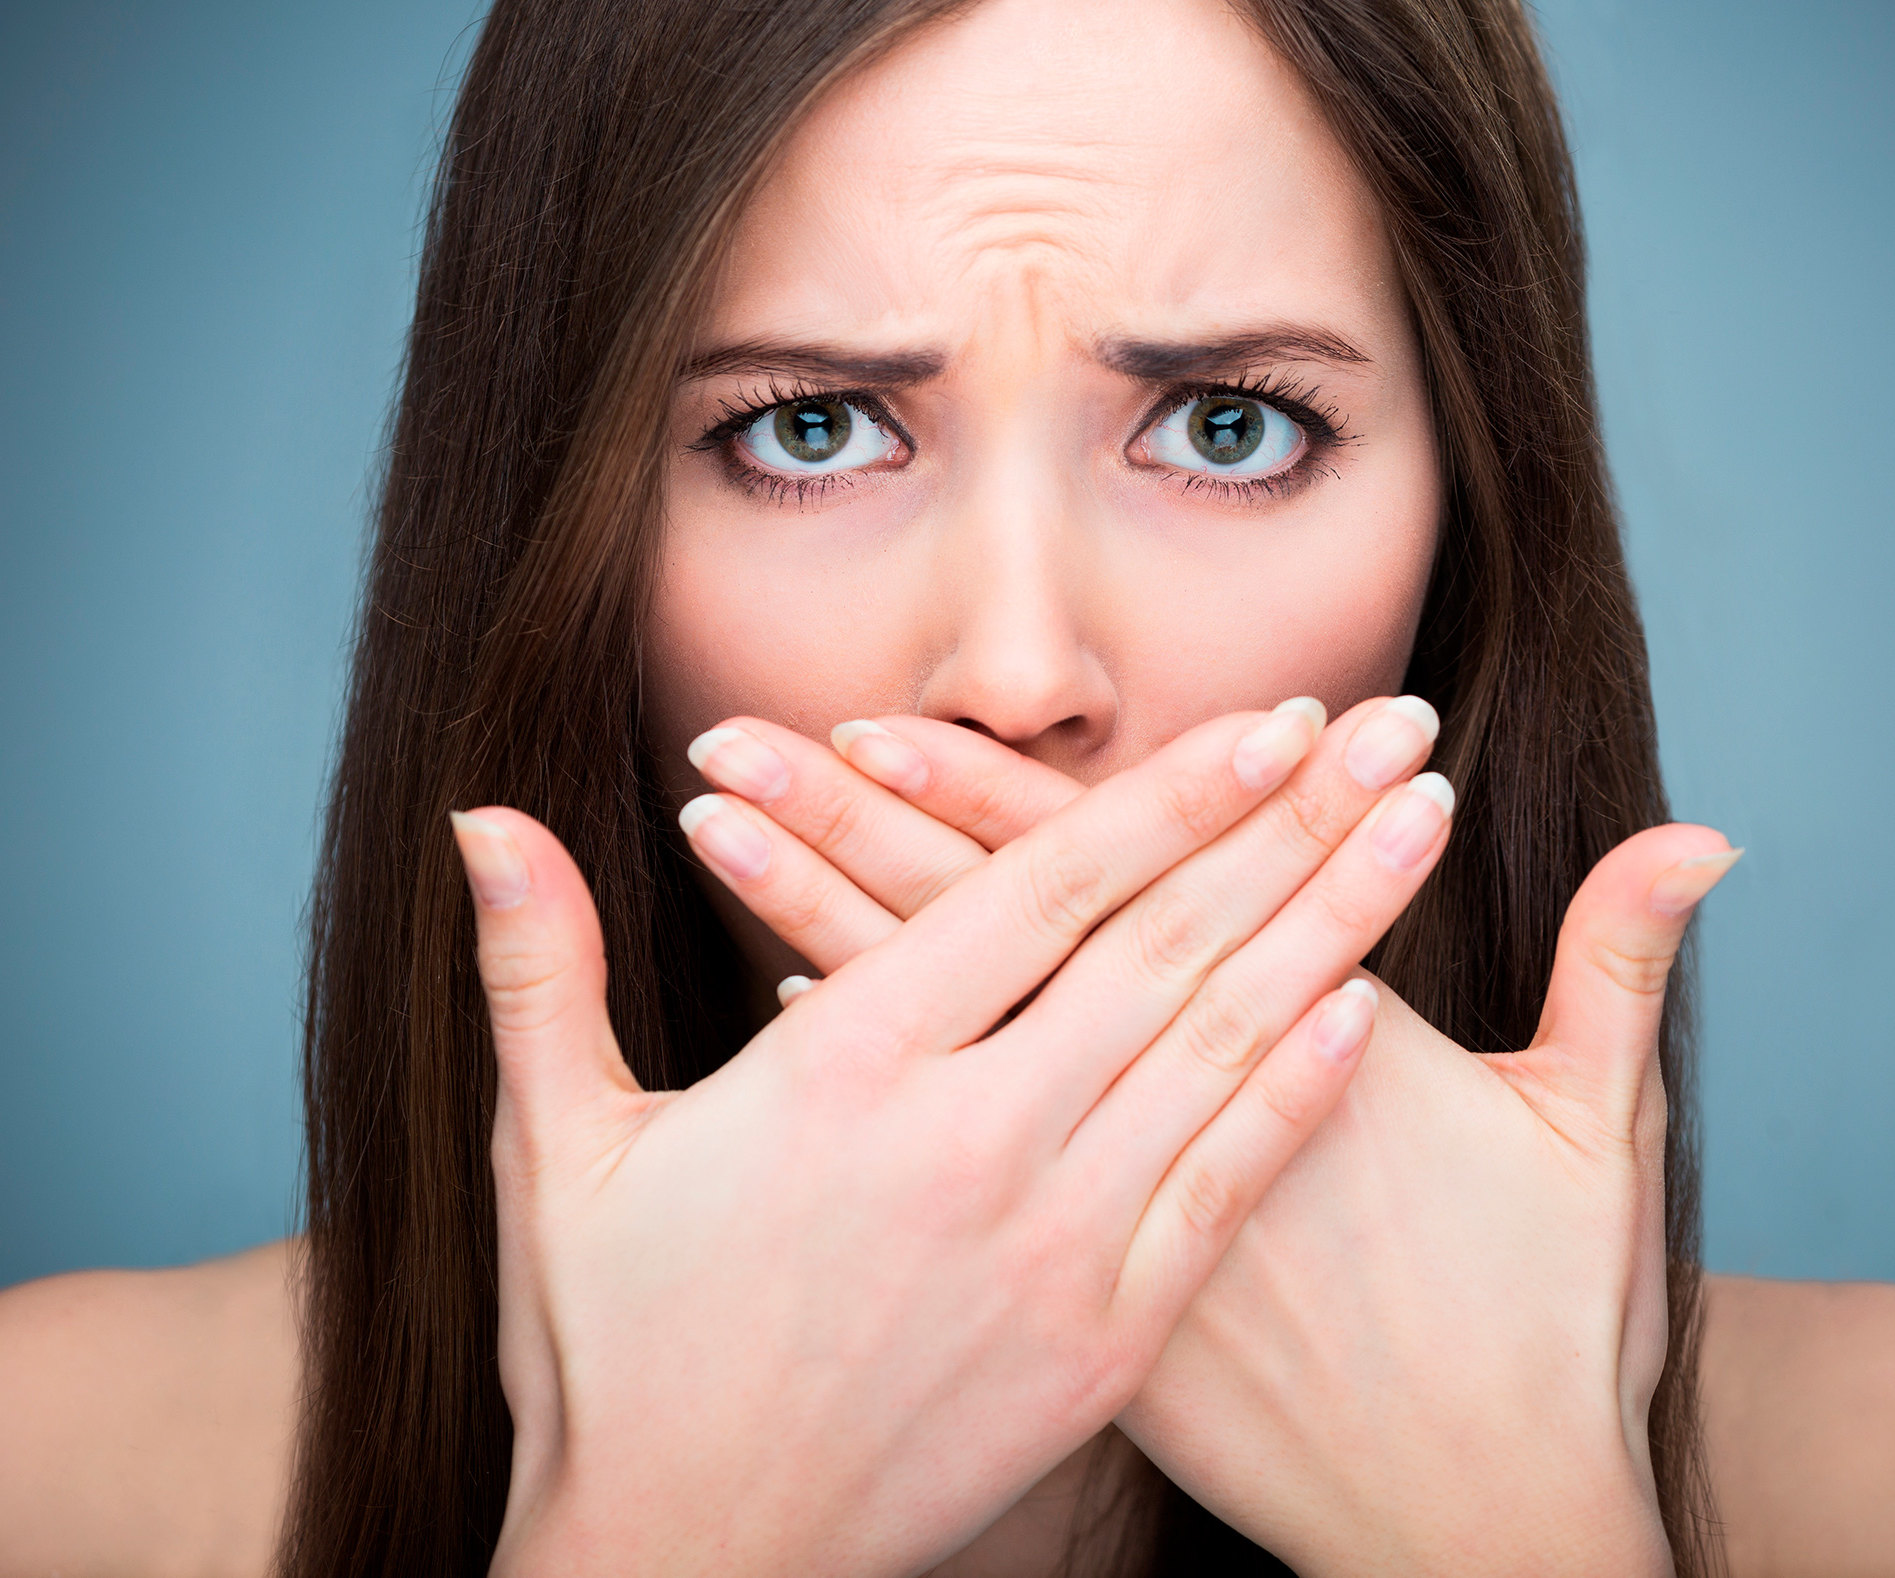 Контроль свежести: как убрать запах изо рта в домашних условиях